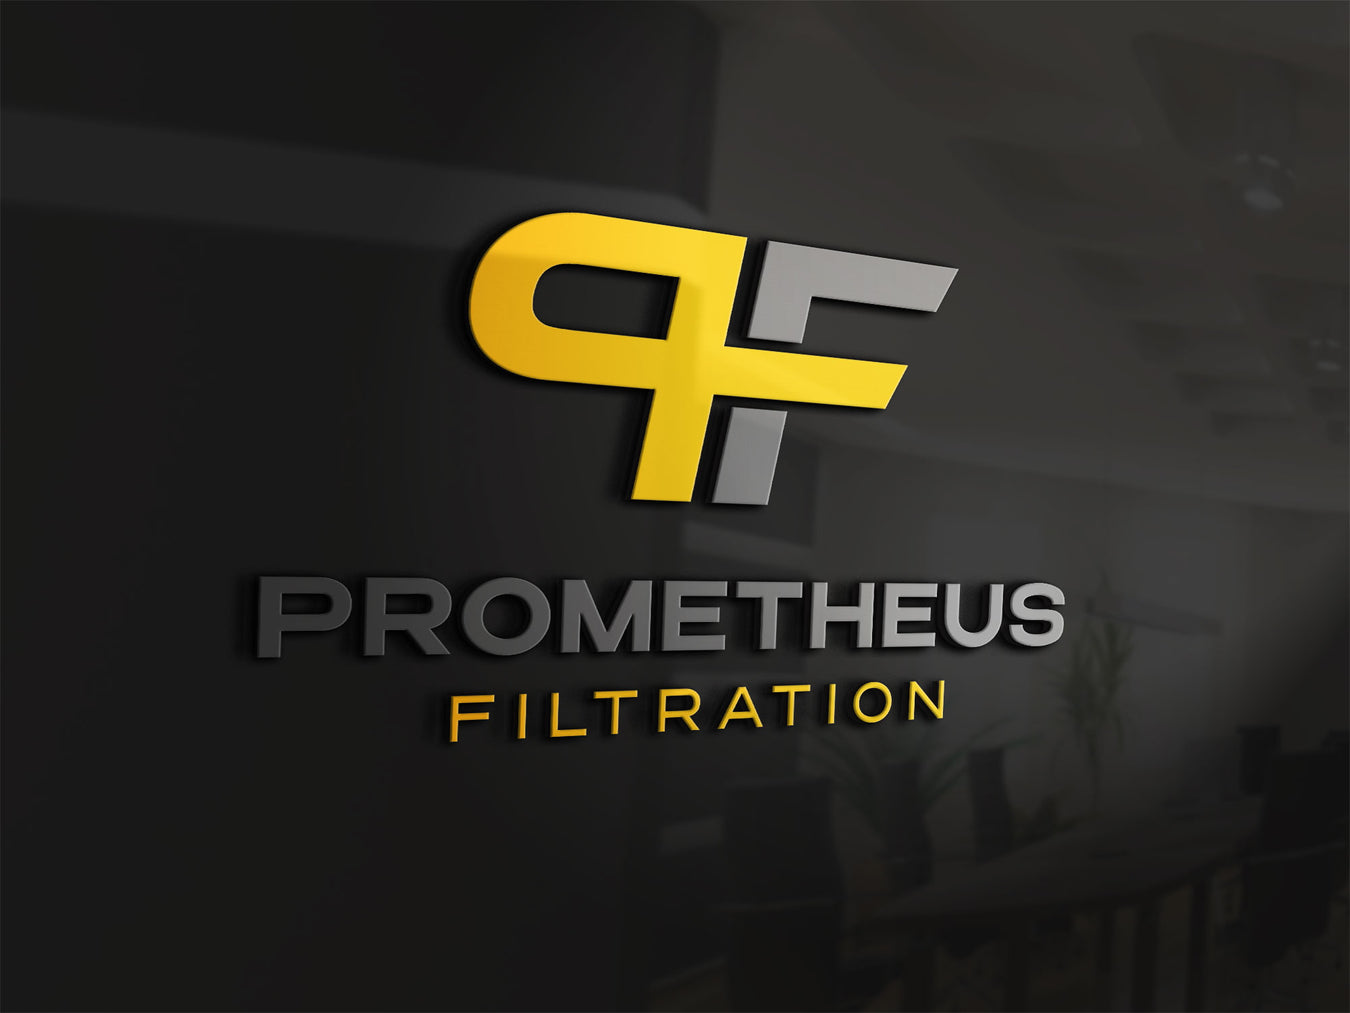 Prometheus Filtration